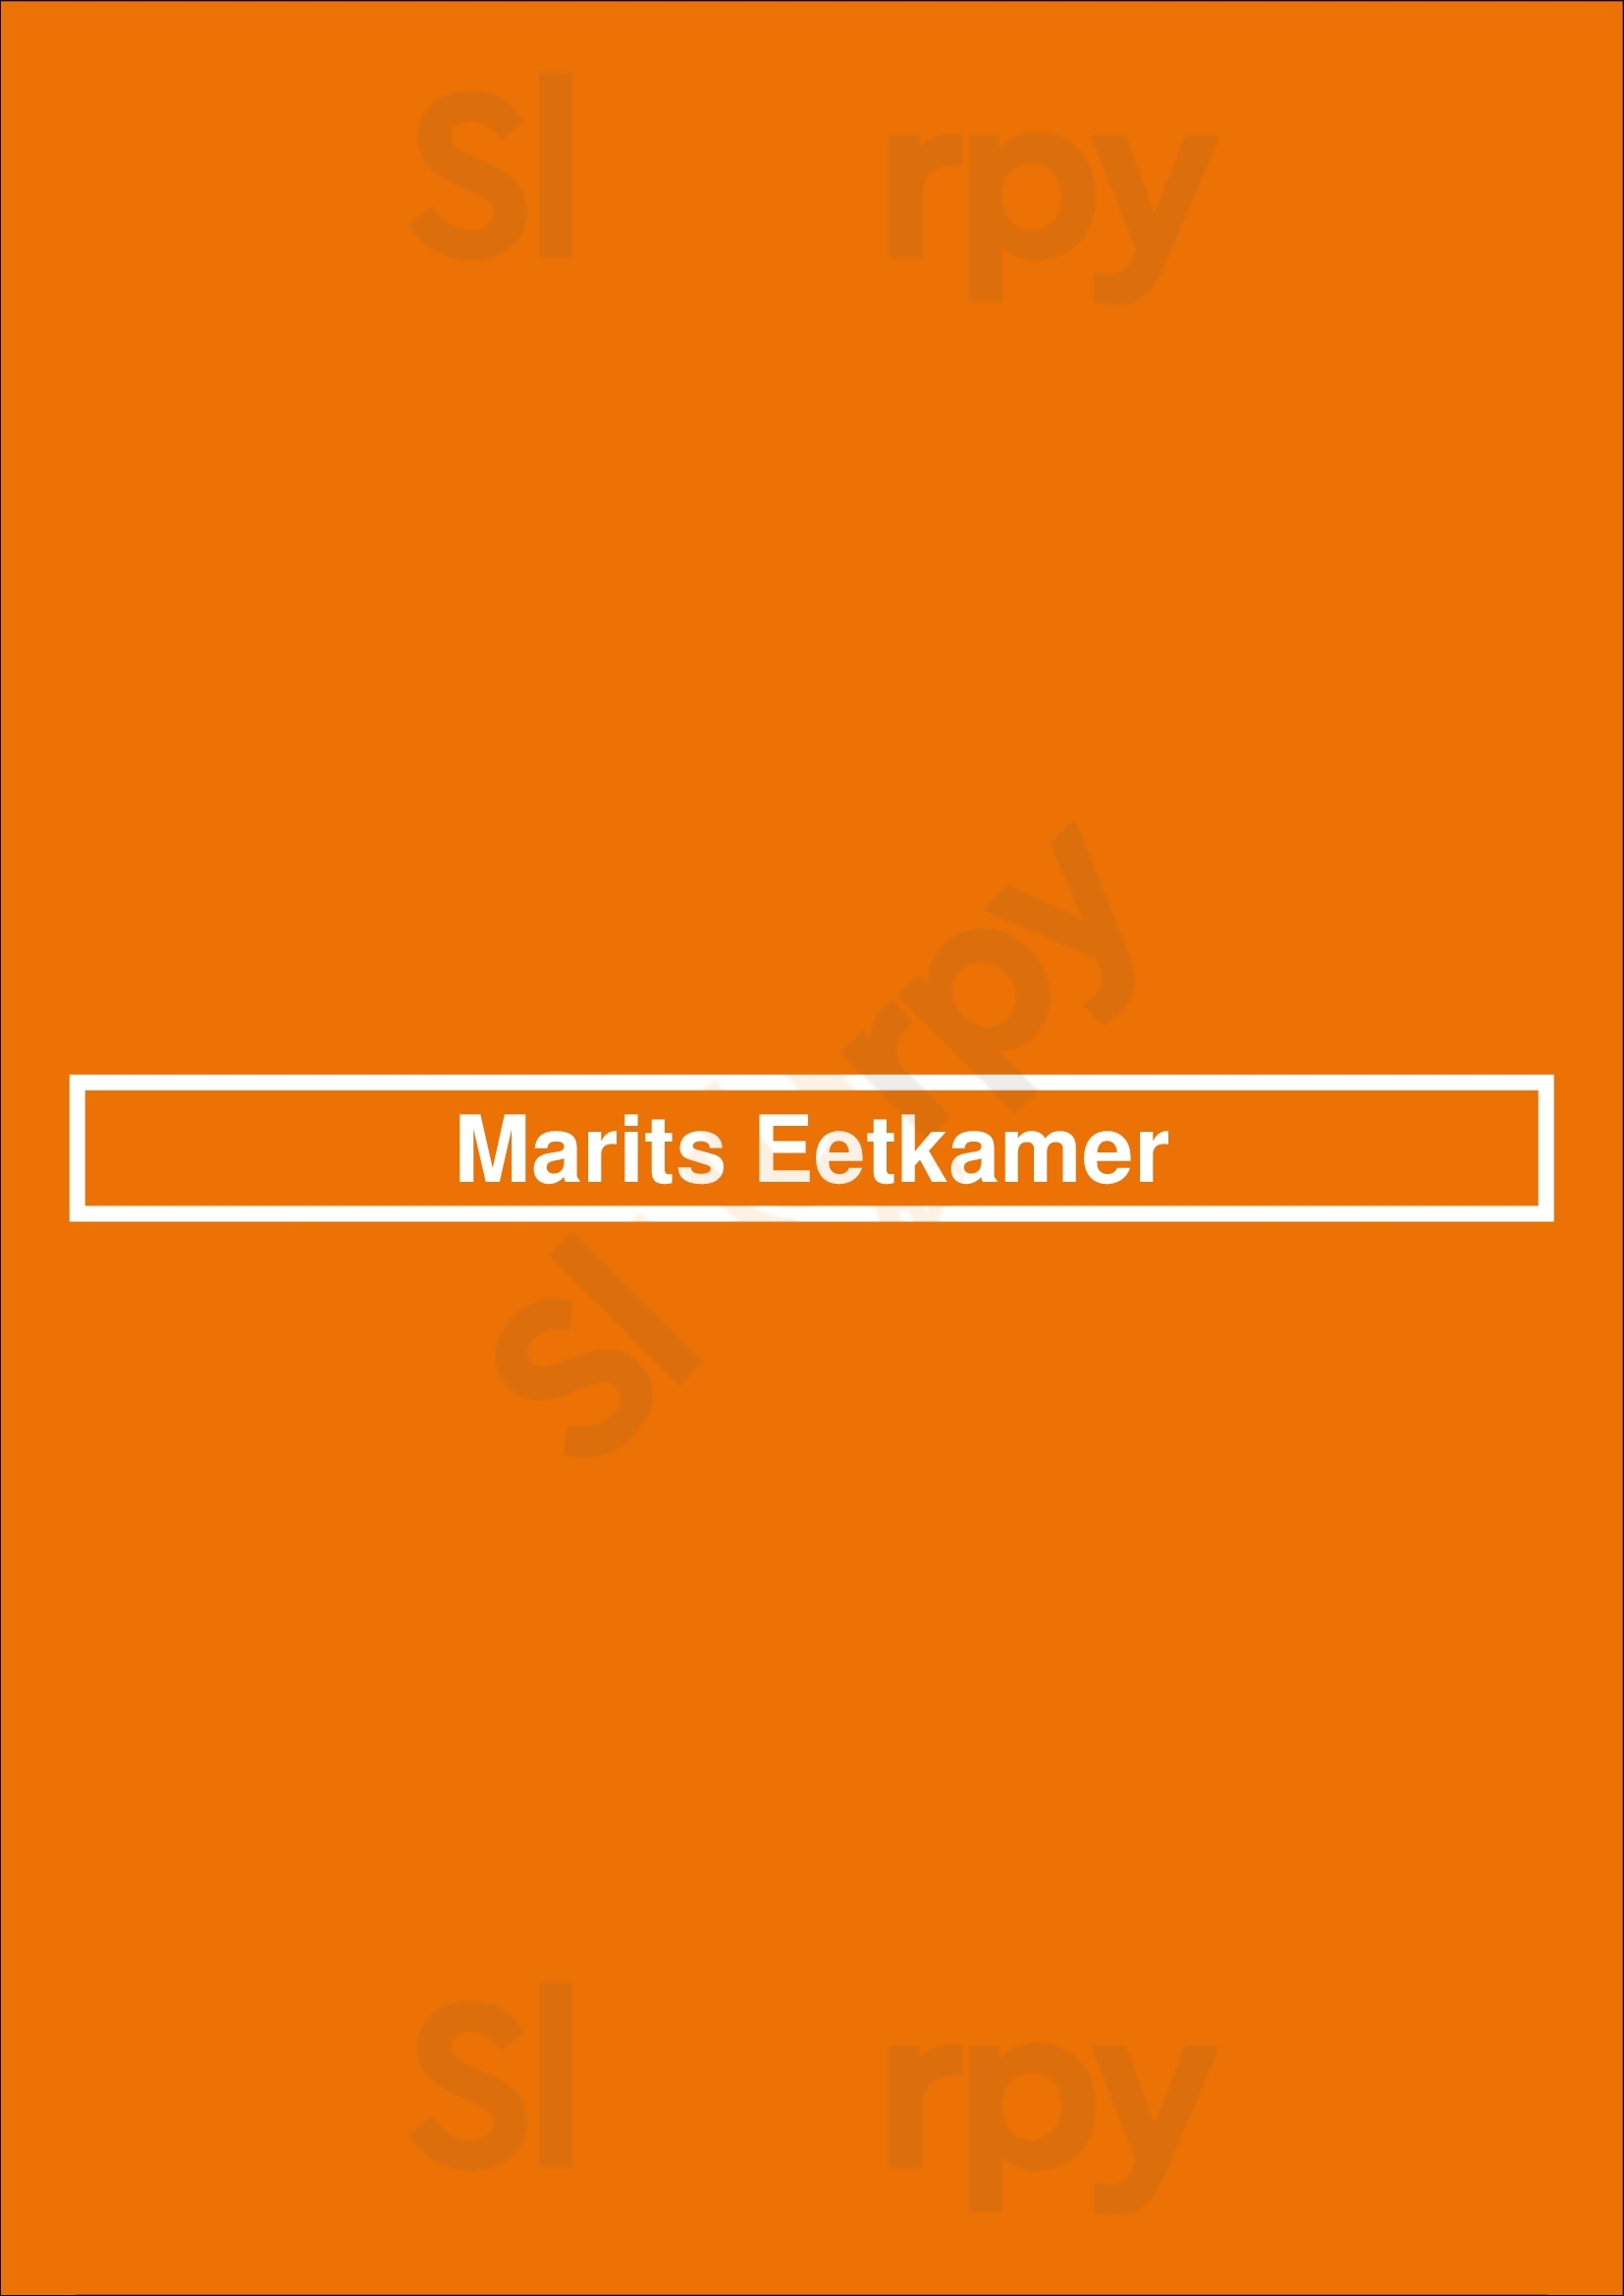 Marits Eetkamer Amsterdam Menu - 1